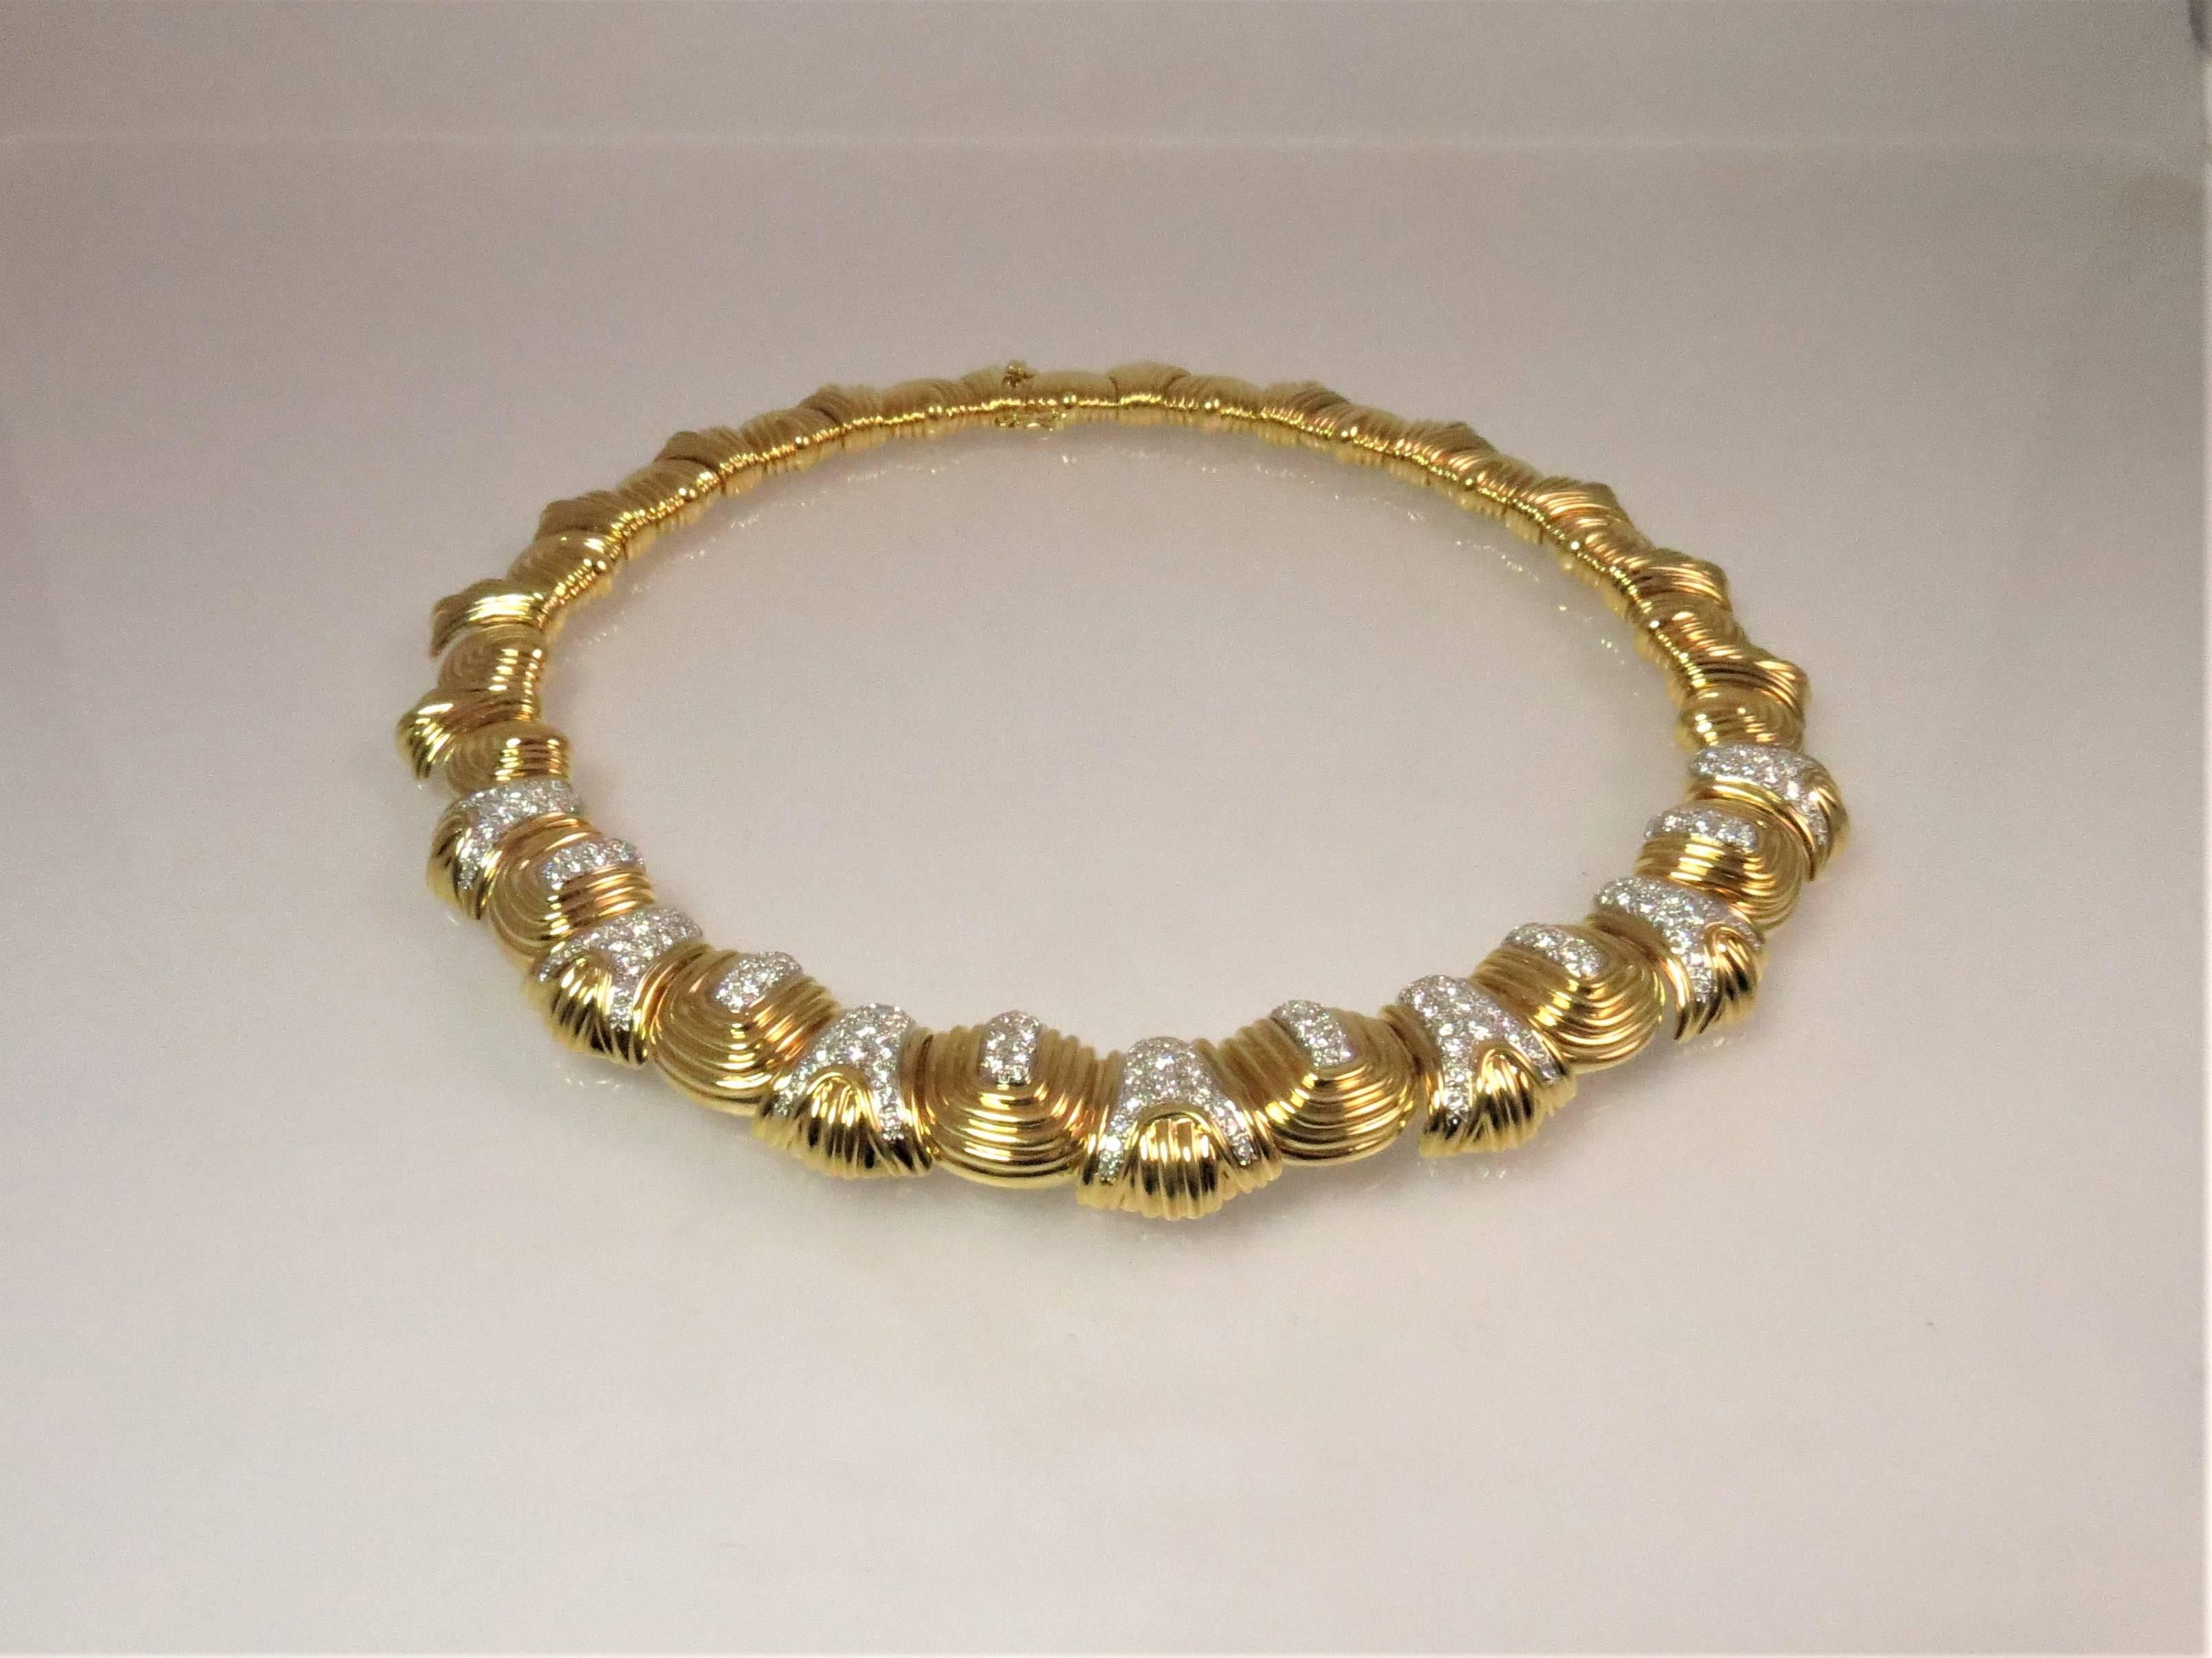  Atemberaubende Montreaux Halskette aus 18K Gelbgold mit 195 runden Diamanten im Vollschliff (in Platin gefasst)  Gewicht 5,10cts, Farbe D-E, IF und VVS1.